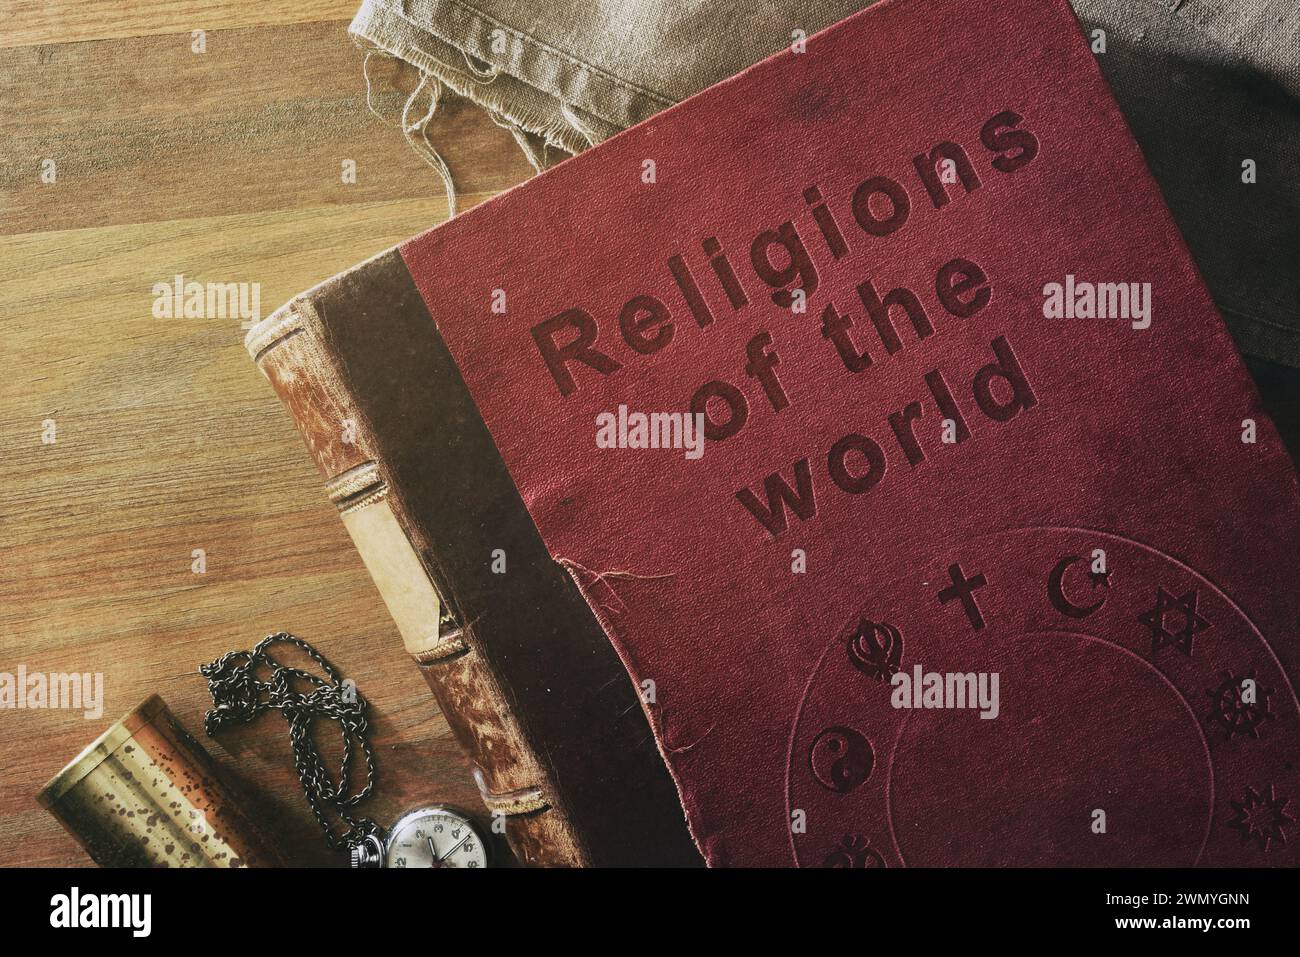 Dettaglio di un vecchio libro sullo studio delle religioni nel mondo con testo inciso e simboli di varie religioni su tavola in legno con oggetti decorativi. Foto Stock